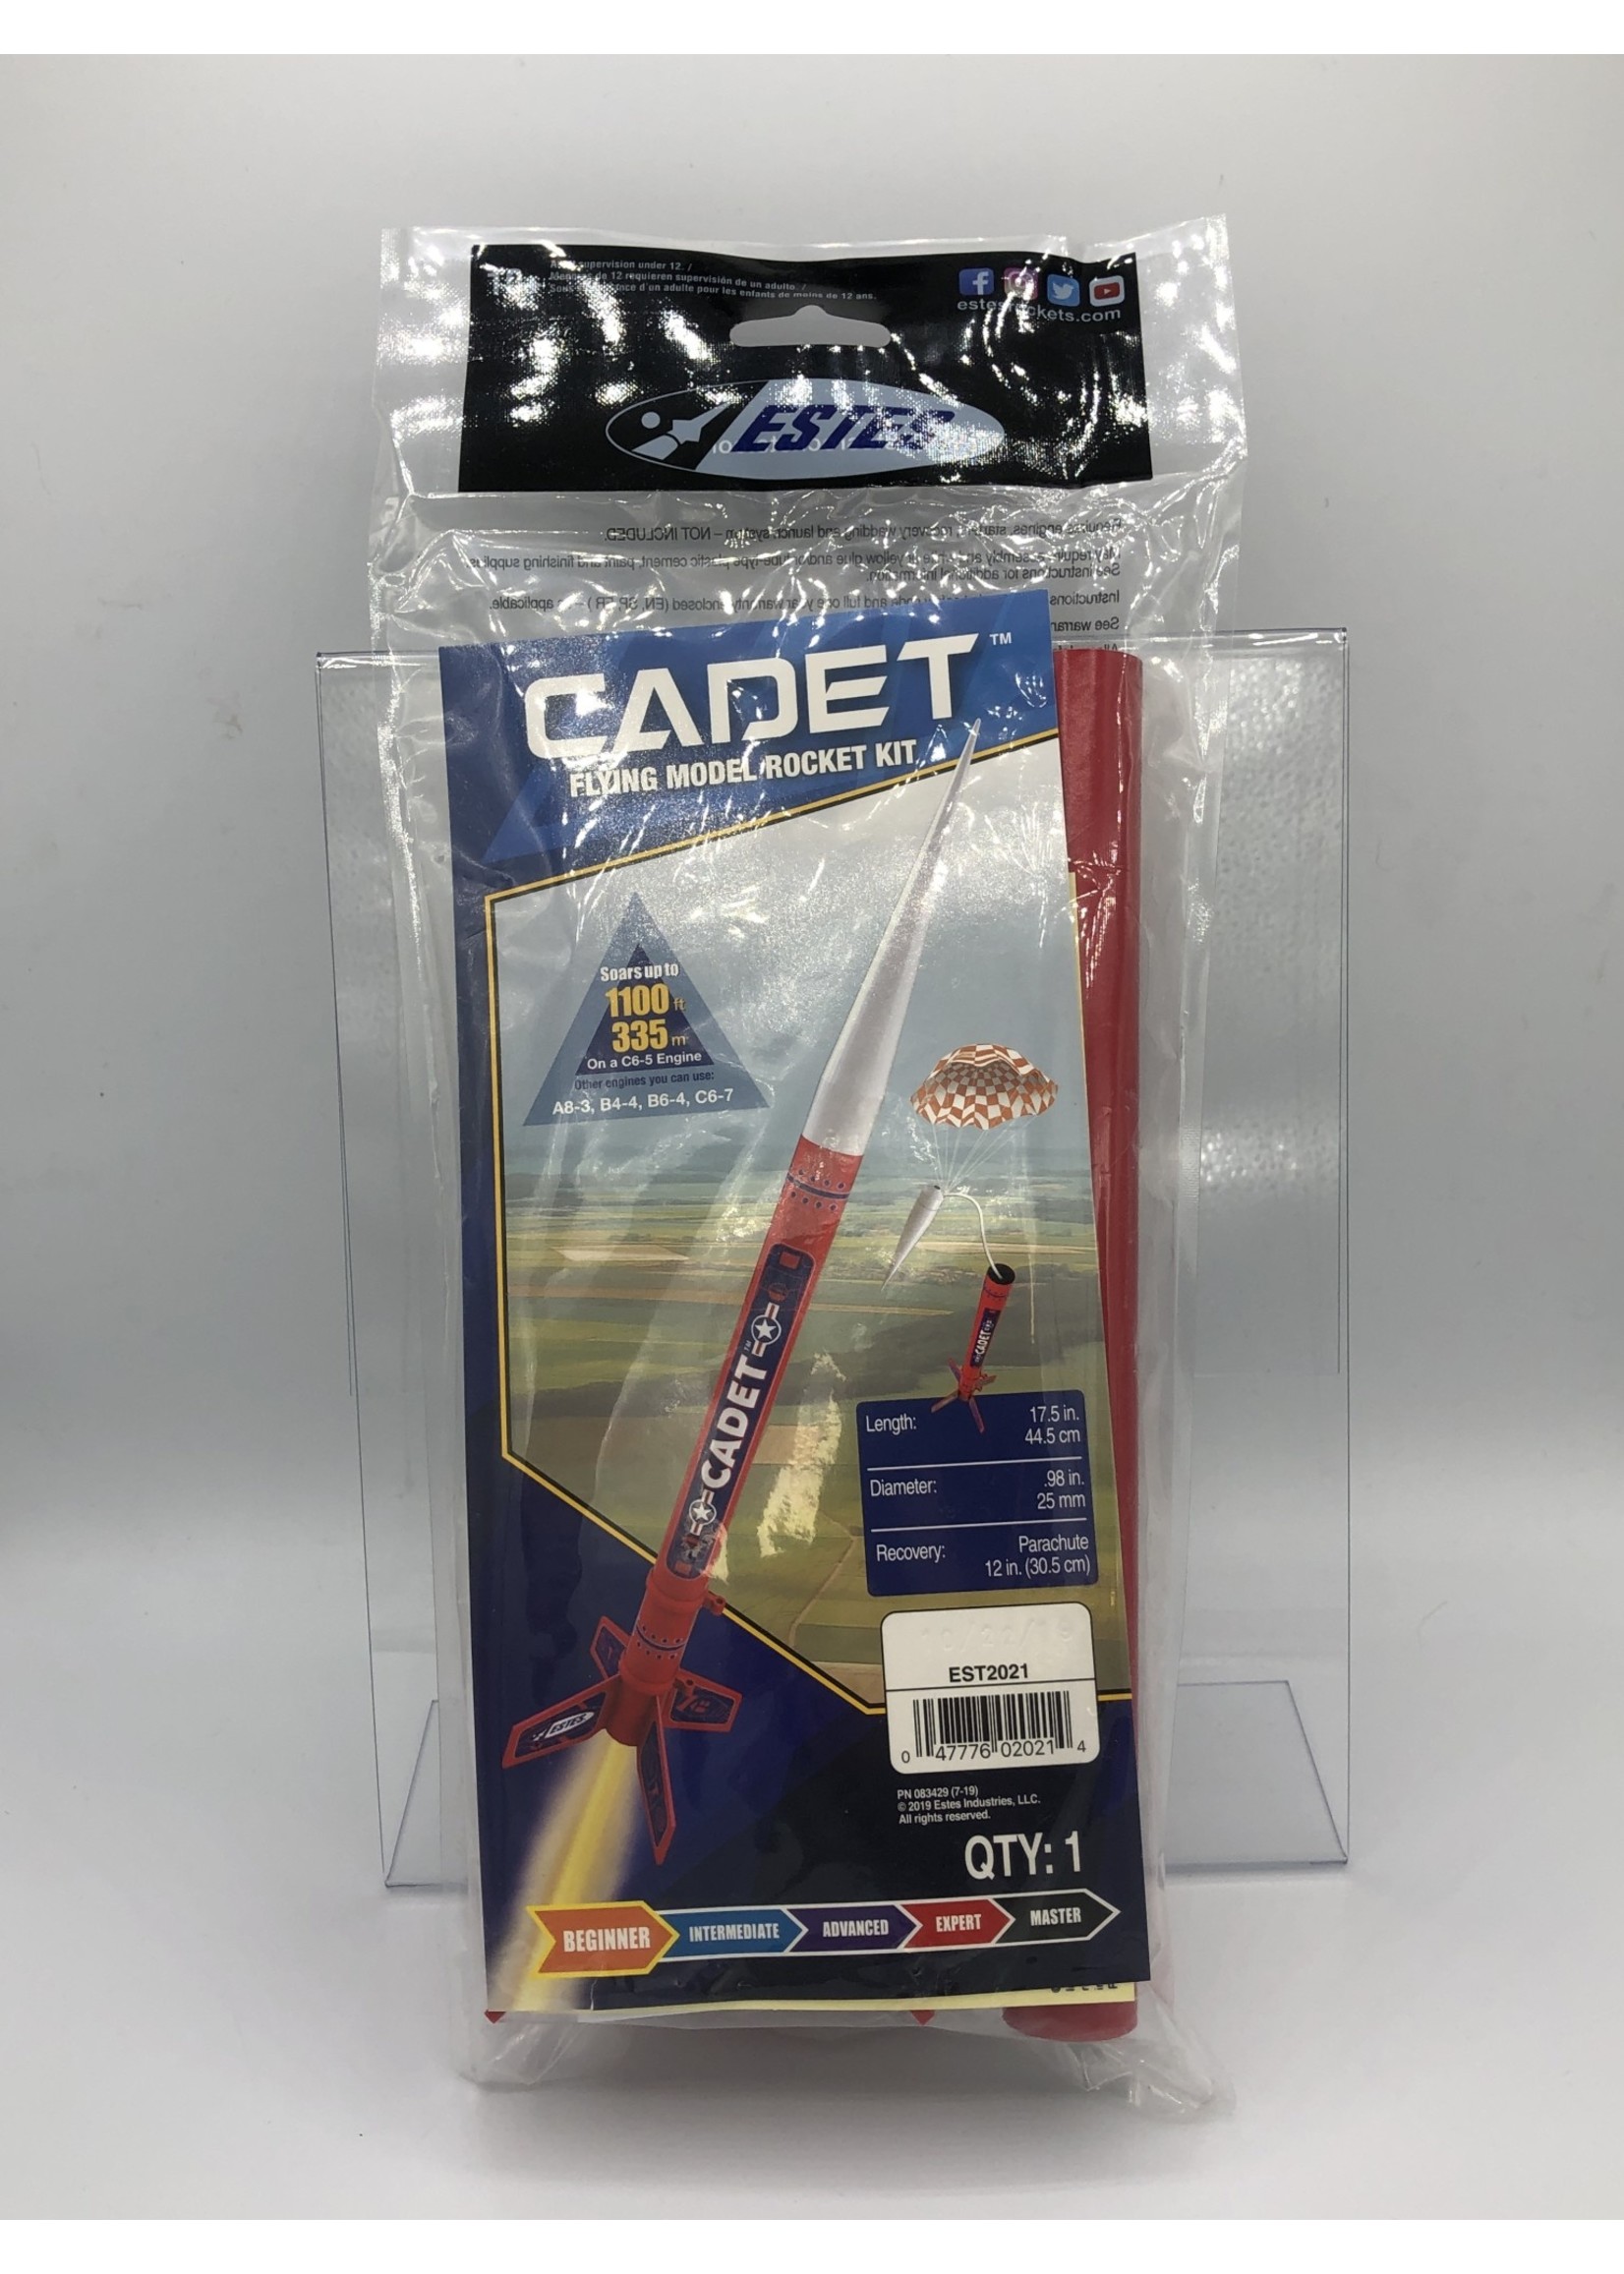 Models   Estes Cadet Rocket Model